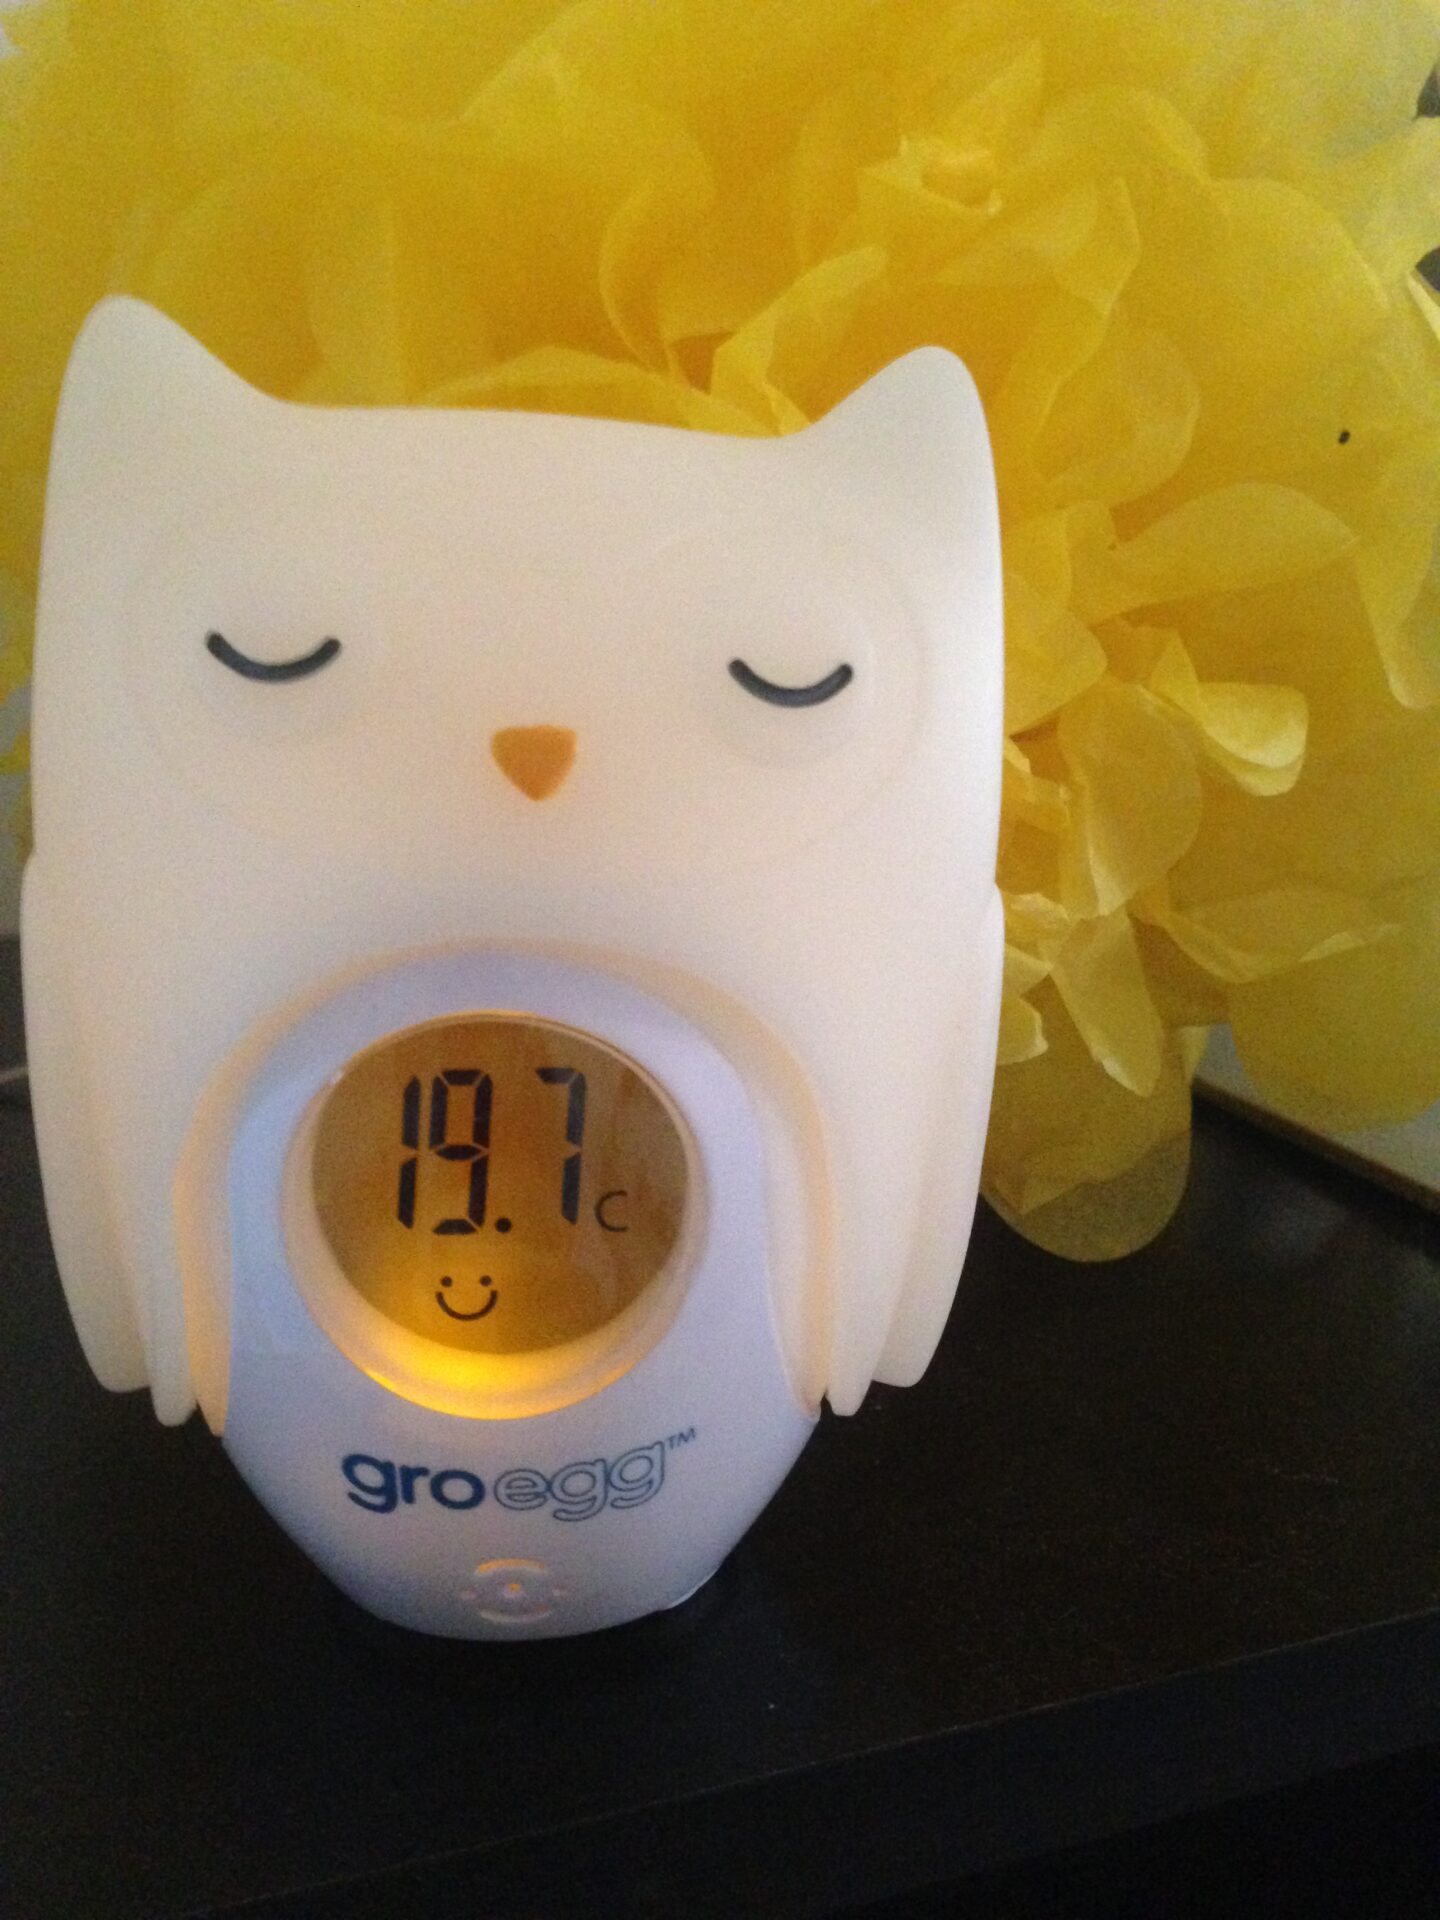 Lottie Loves: Gro-egg Room Thermometer